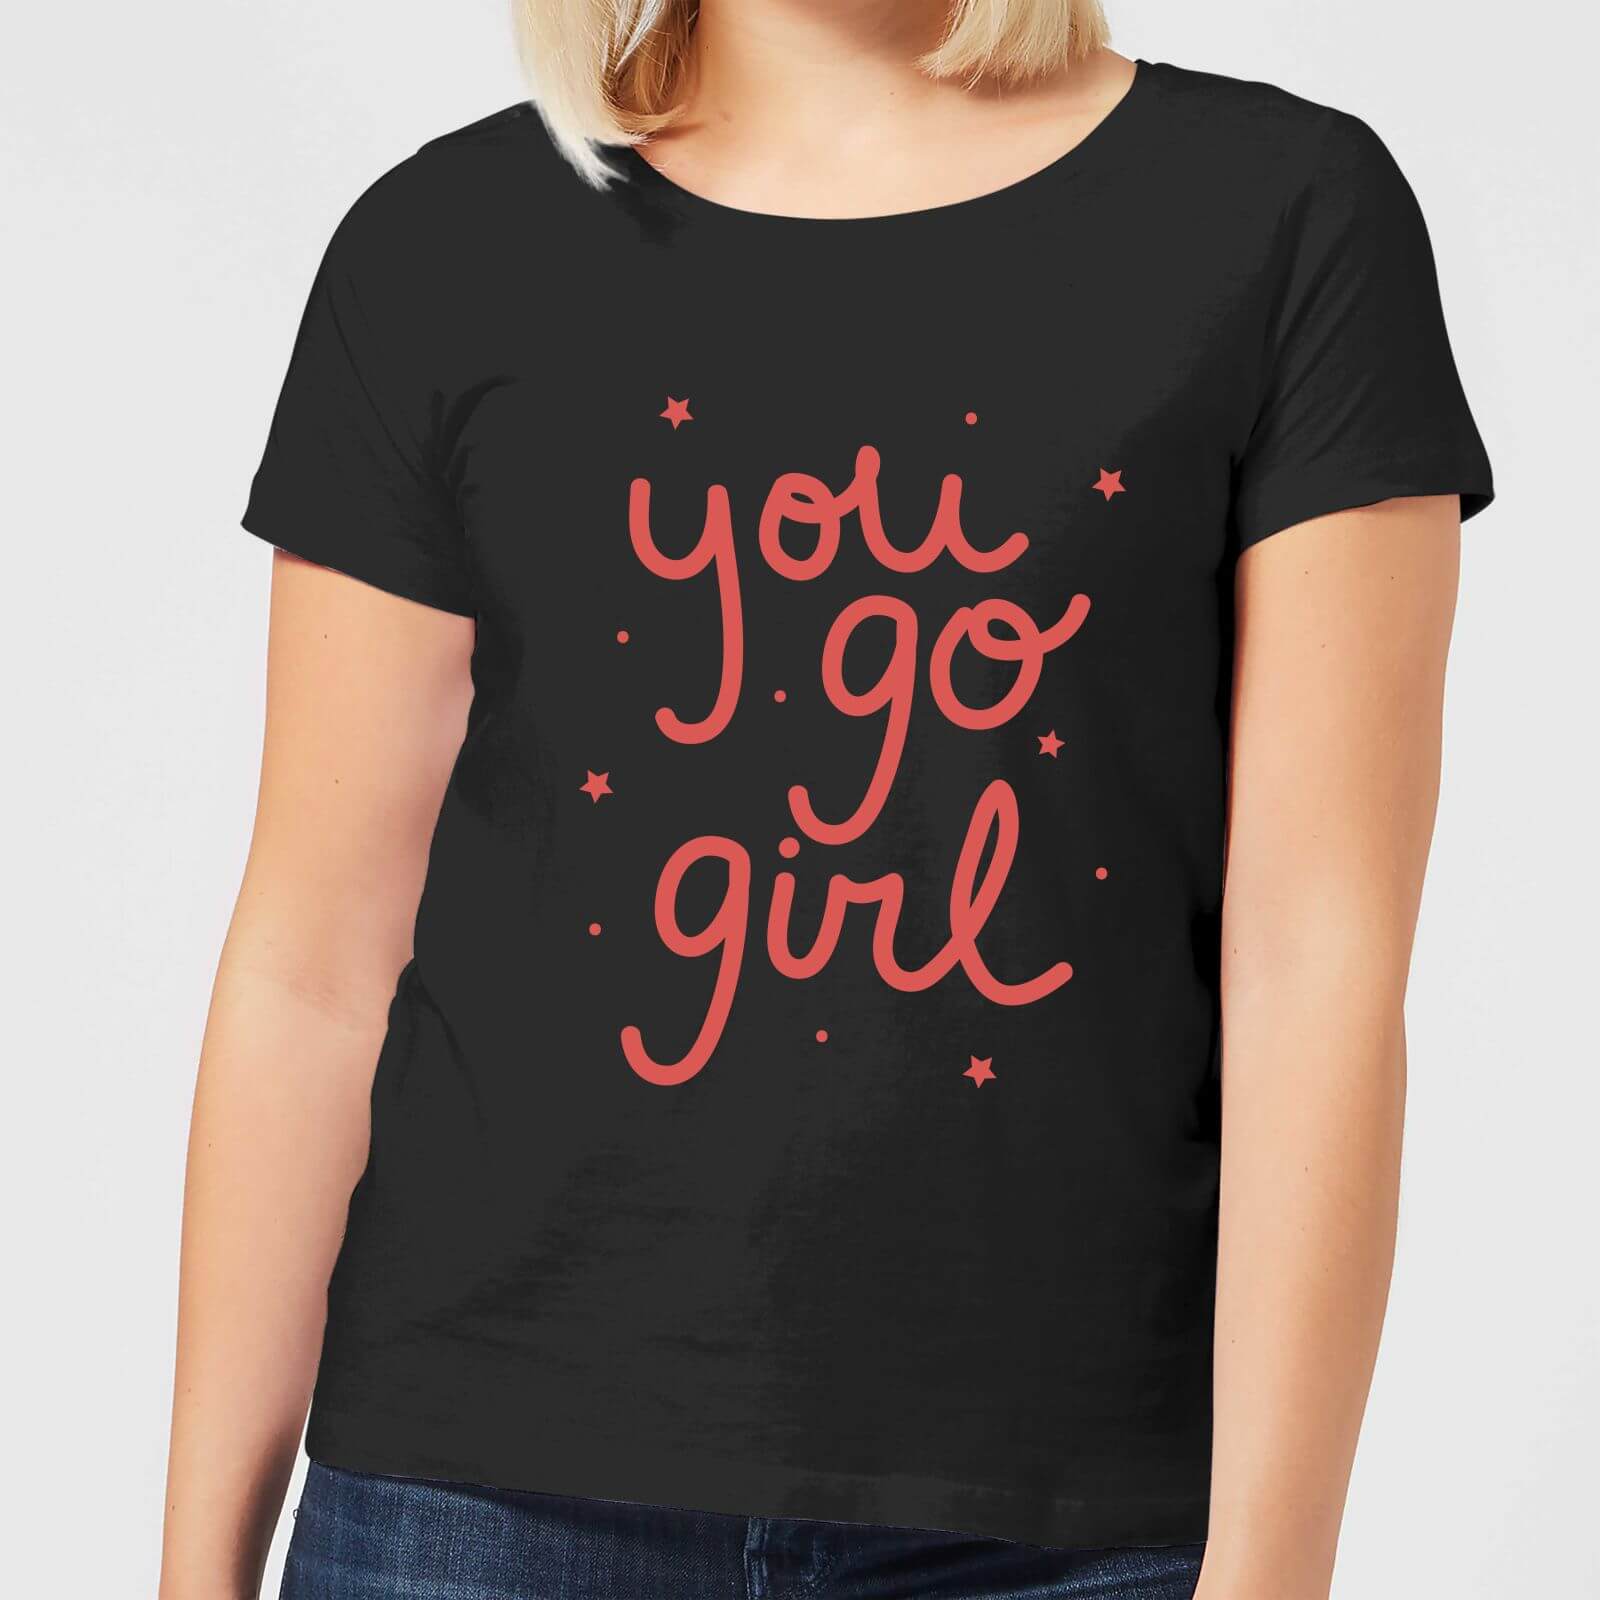 You Go Girl Women's T-Shirt - Black - S - Black